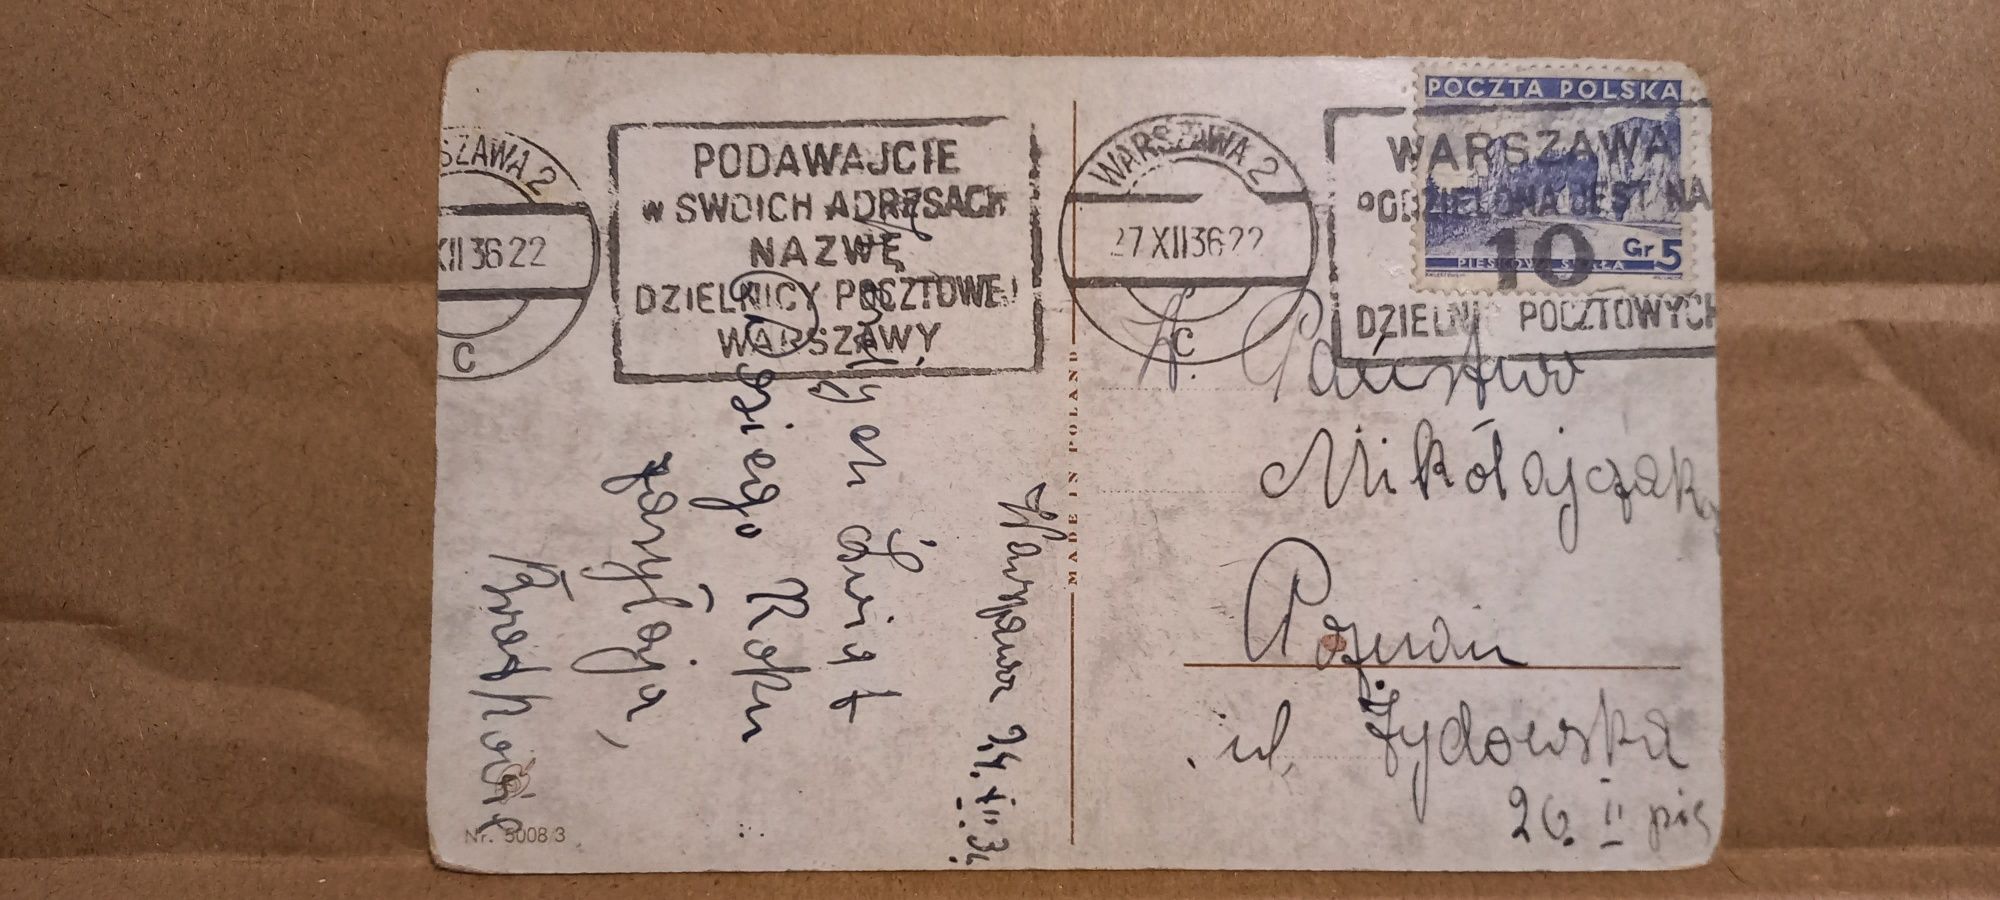 Znaczek Pieskowa Skała 5 groszy 1936 i pocztówka obieg Warszawa